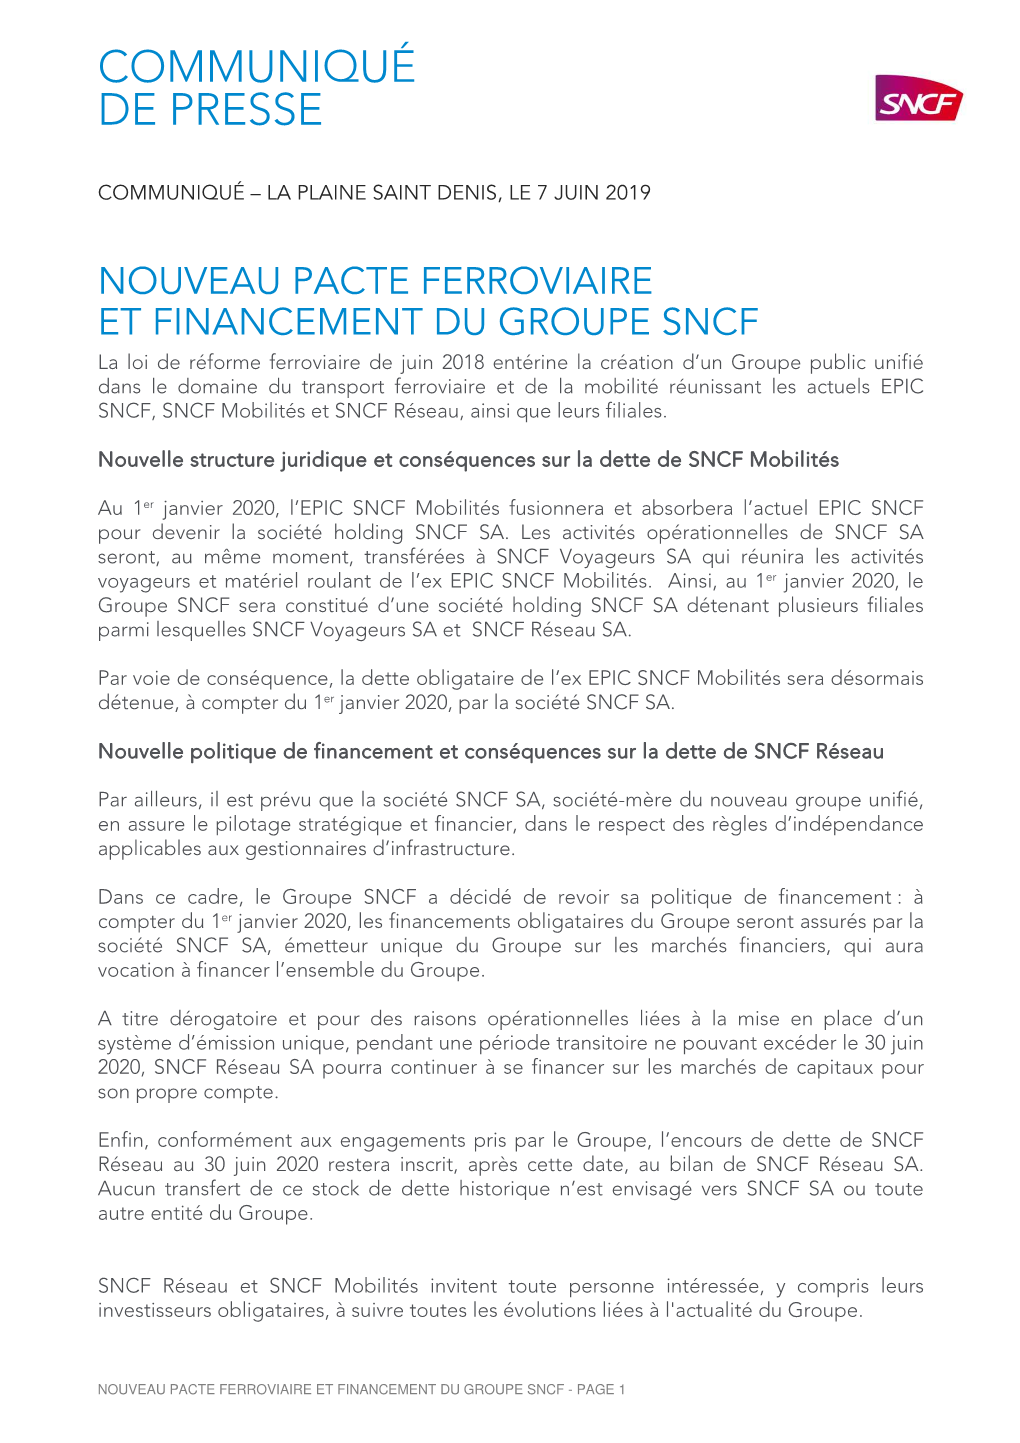 CP Groupe SNCF Nouveau Pacte Ferroviaire Et Financement.07.06